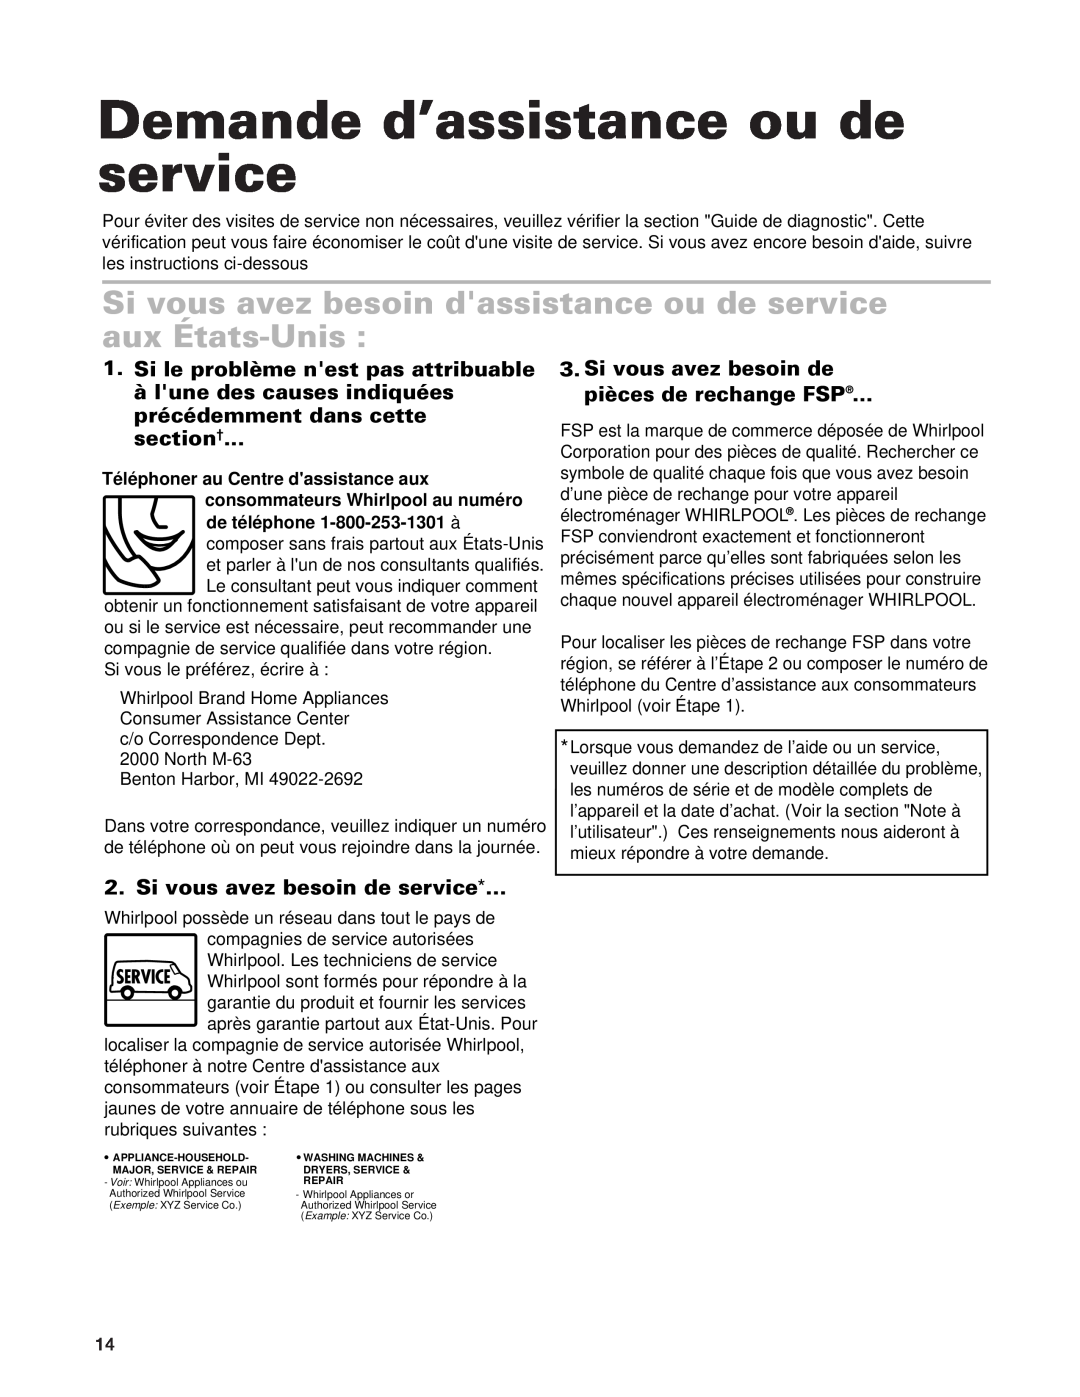 Whirlpool SCS3614G Demande d’assistance ou de service, Si vous avez besoin dassistance ou de service aux États-Unis 